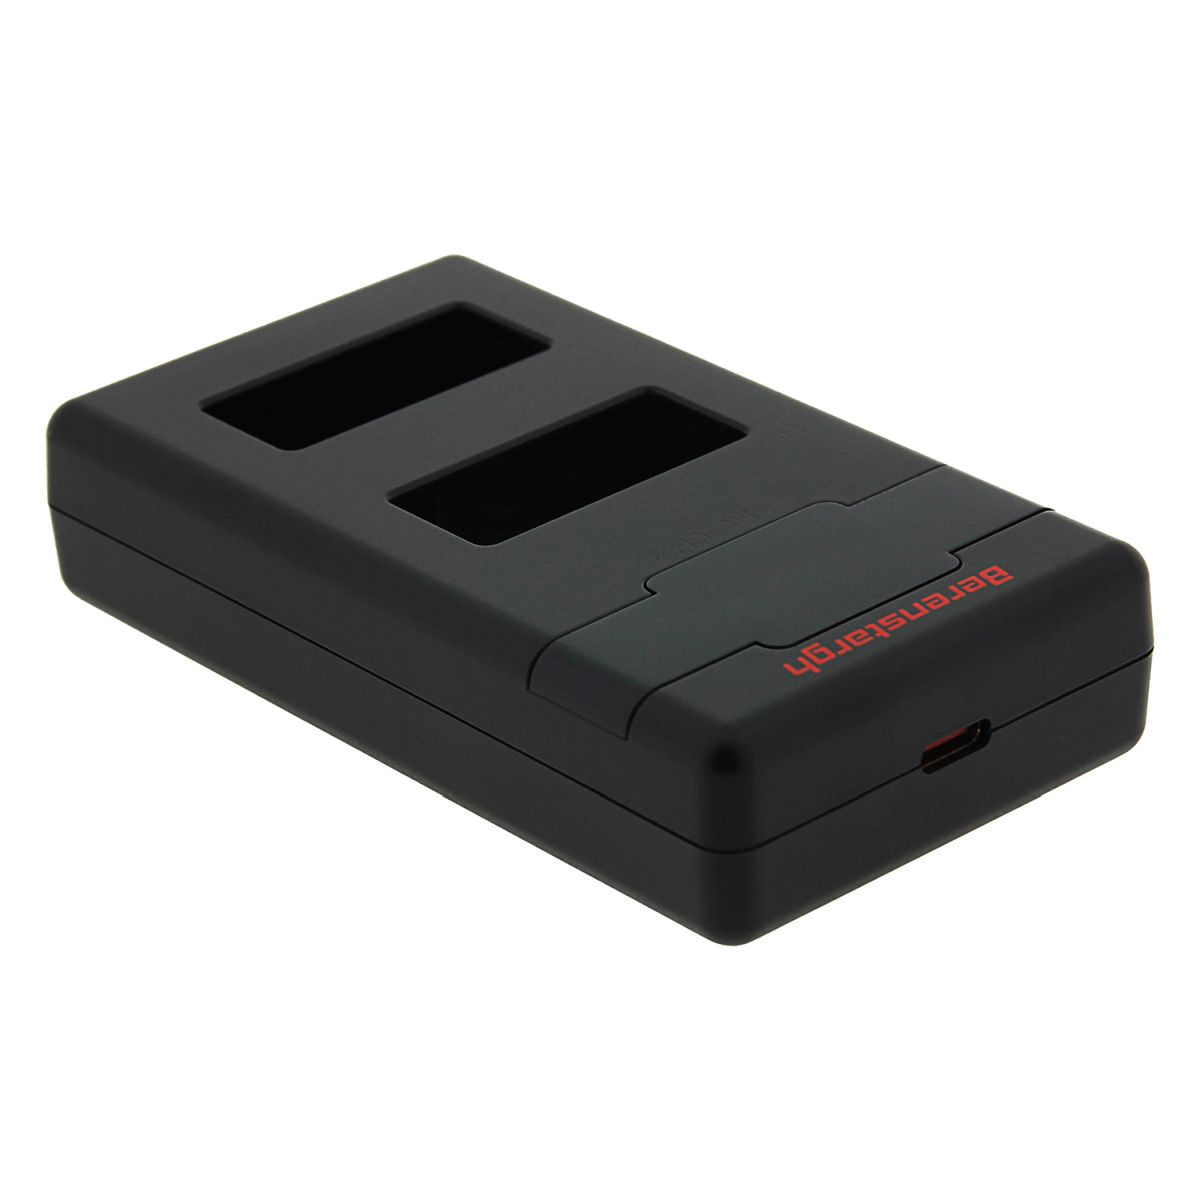 Berenstargh Hyper PD Ladegerät für Canon LP-E17 inkl. USB-C Kabel